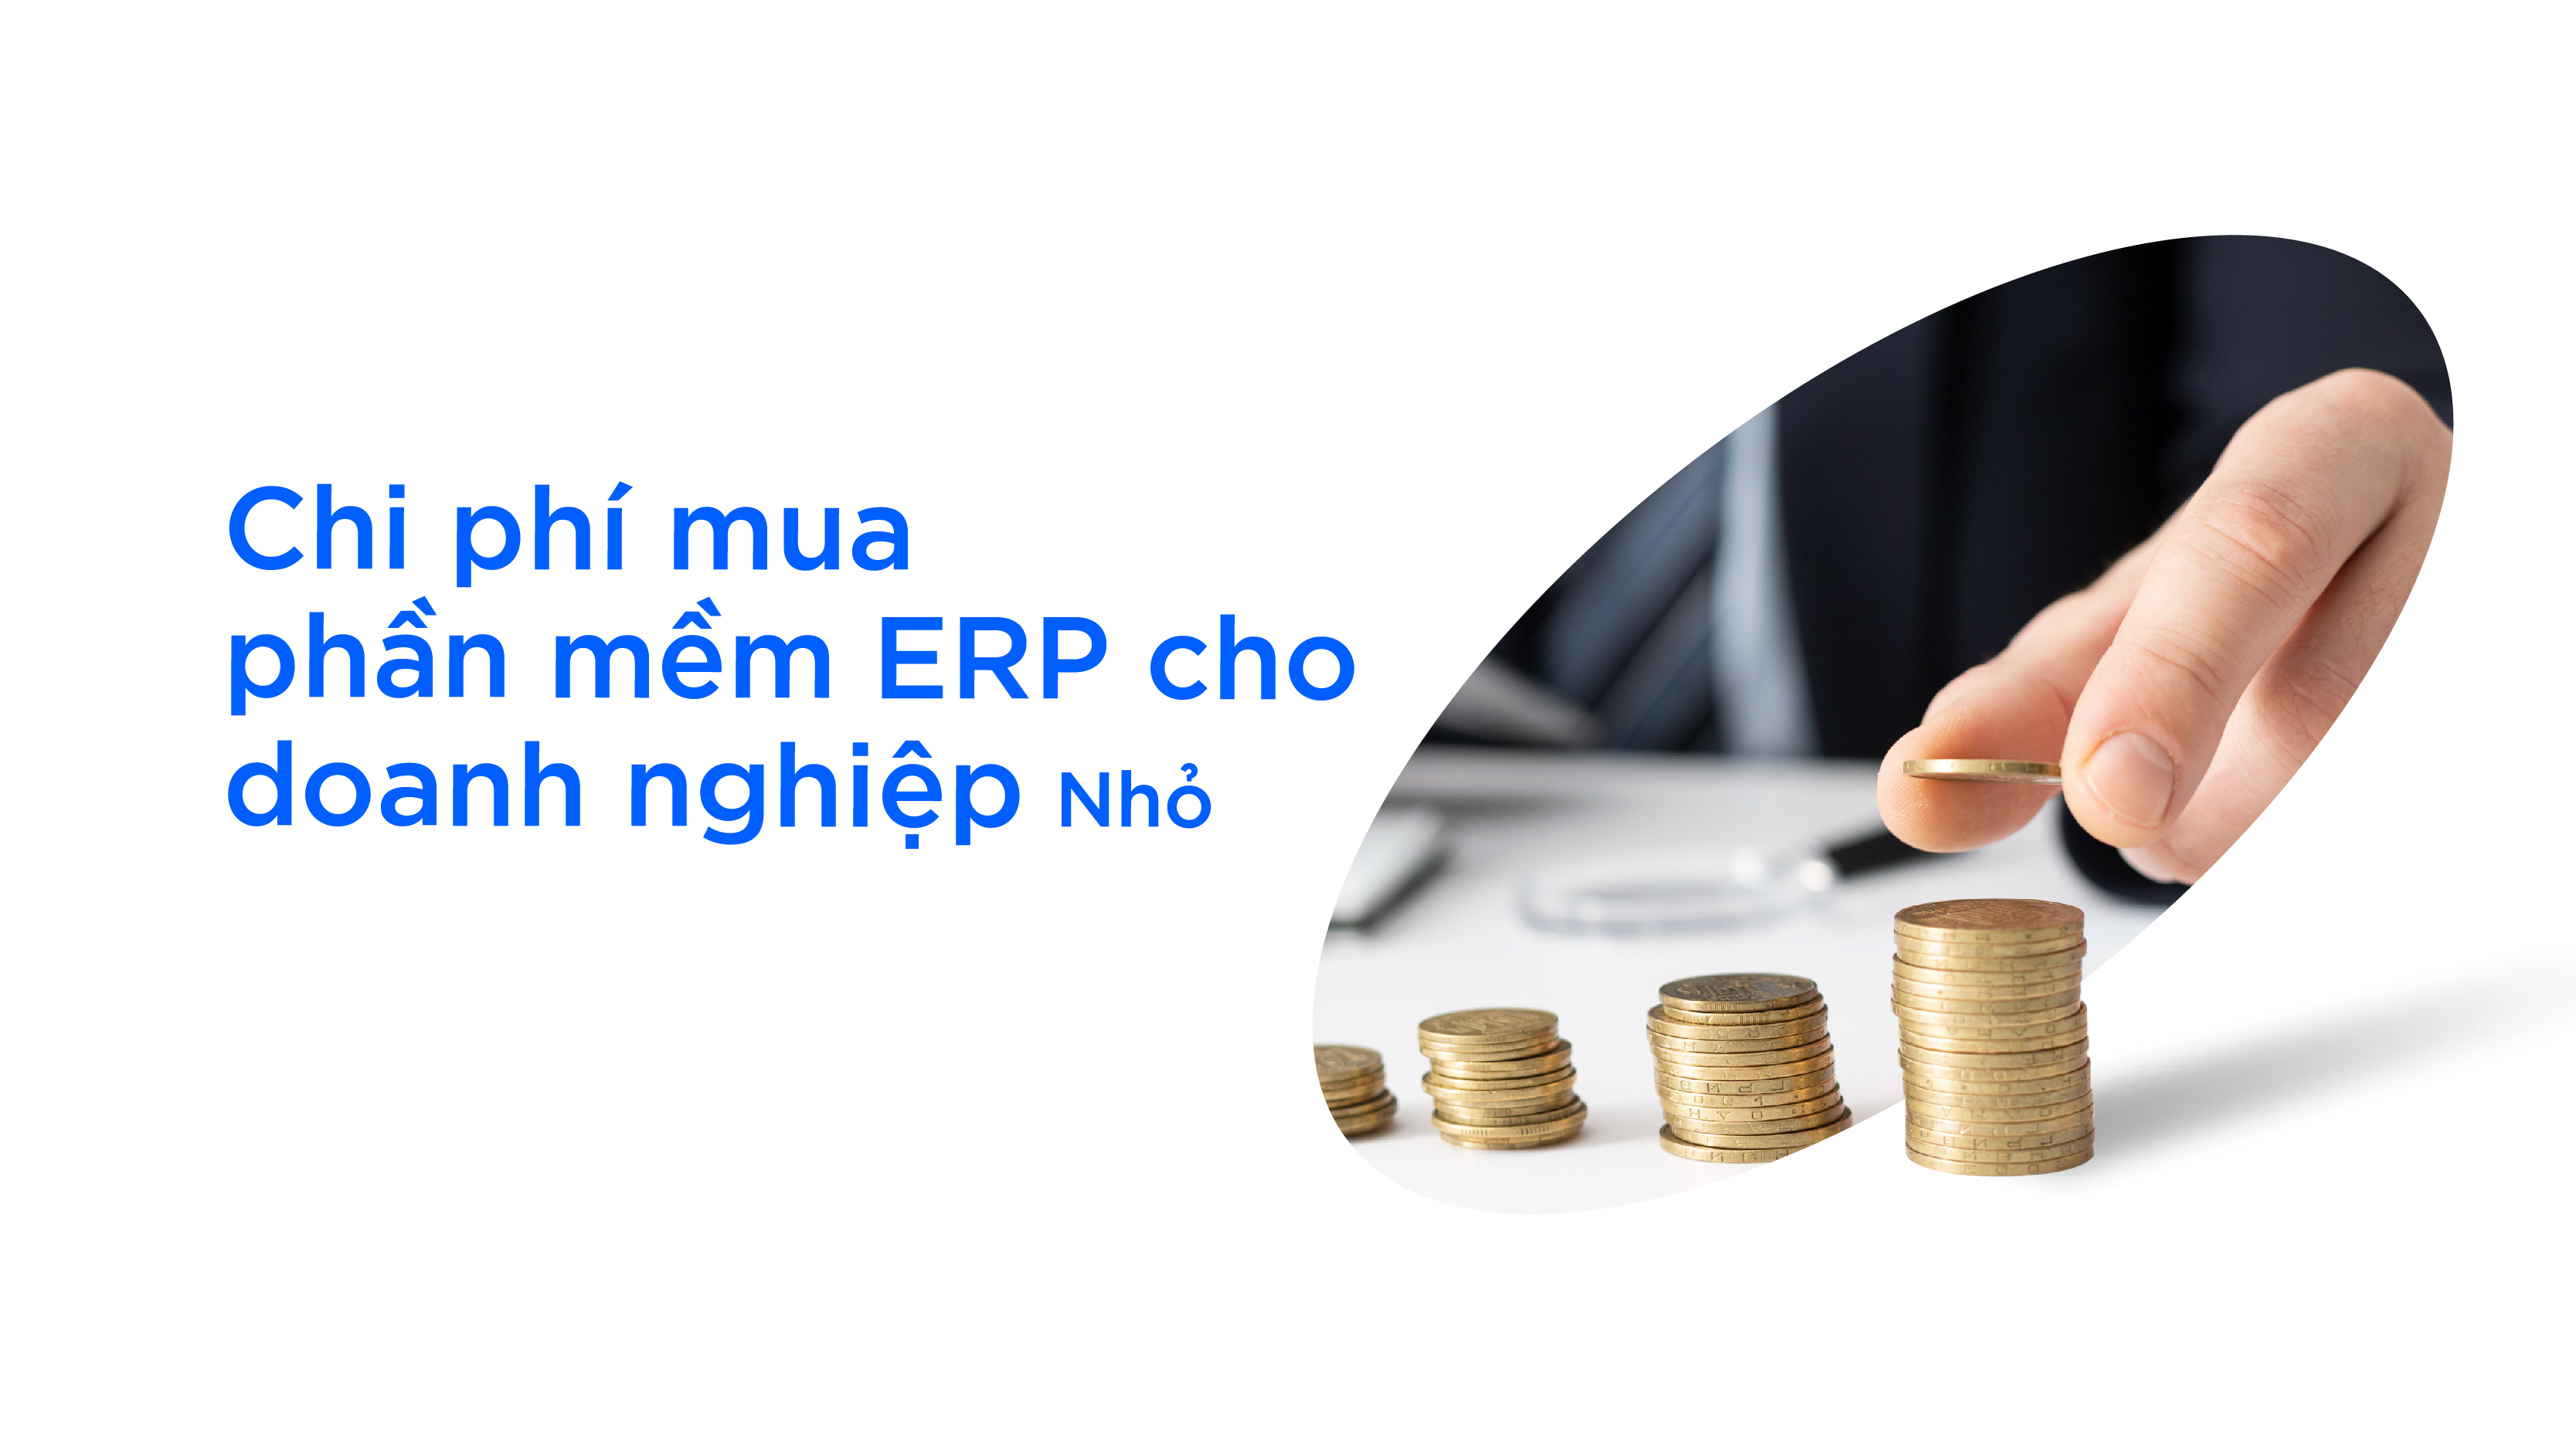 Chi phí mua phần mềm ERP cho doanh nghiệp nhỏ